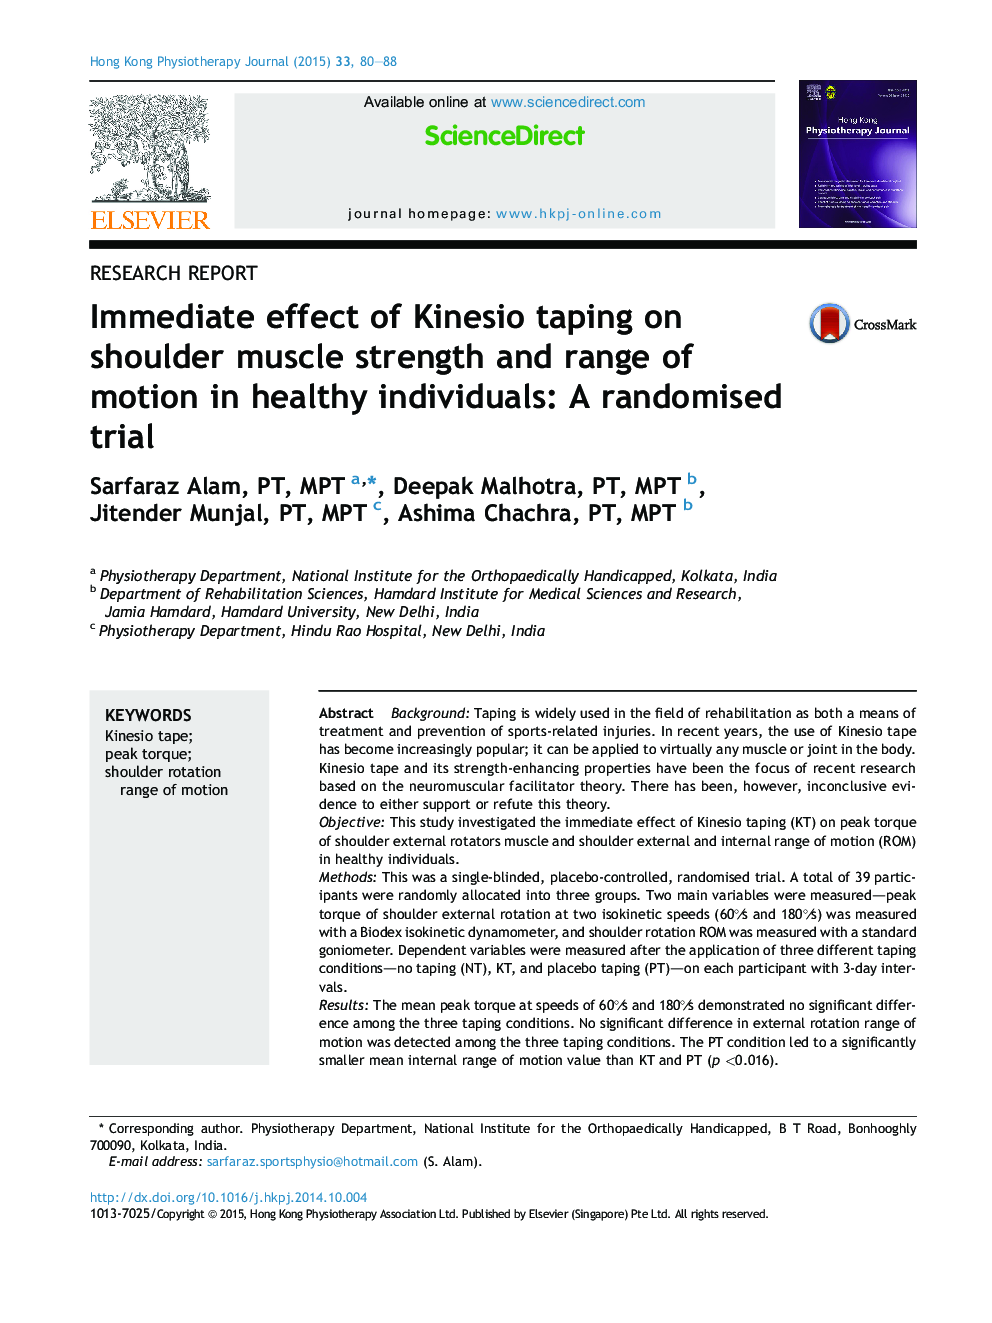 تحقیقات گزارشی تاثیر کینیسیو بر قدرت عضله شانه و دامنه حرکت در افراد سالم: یک کارآزمایی تصادفی 